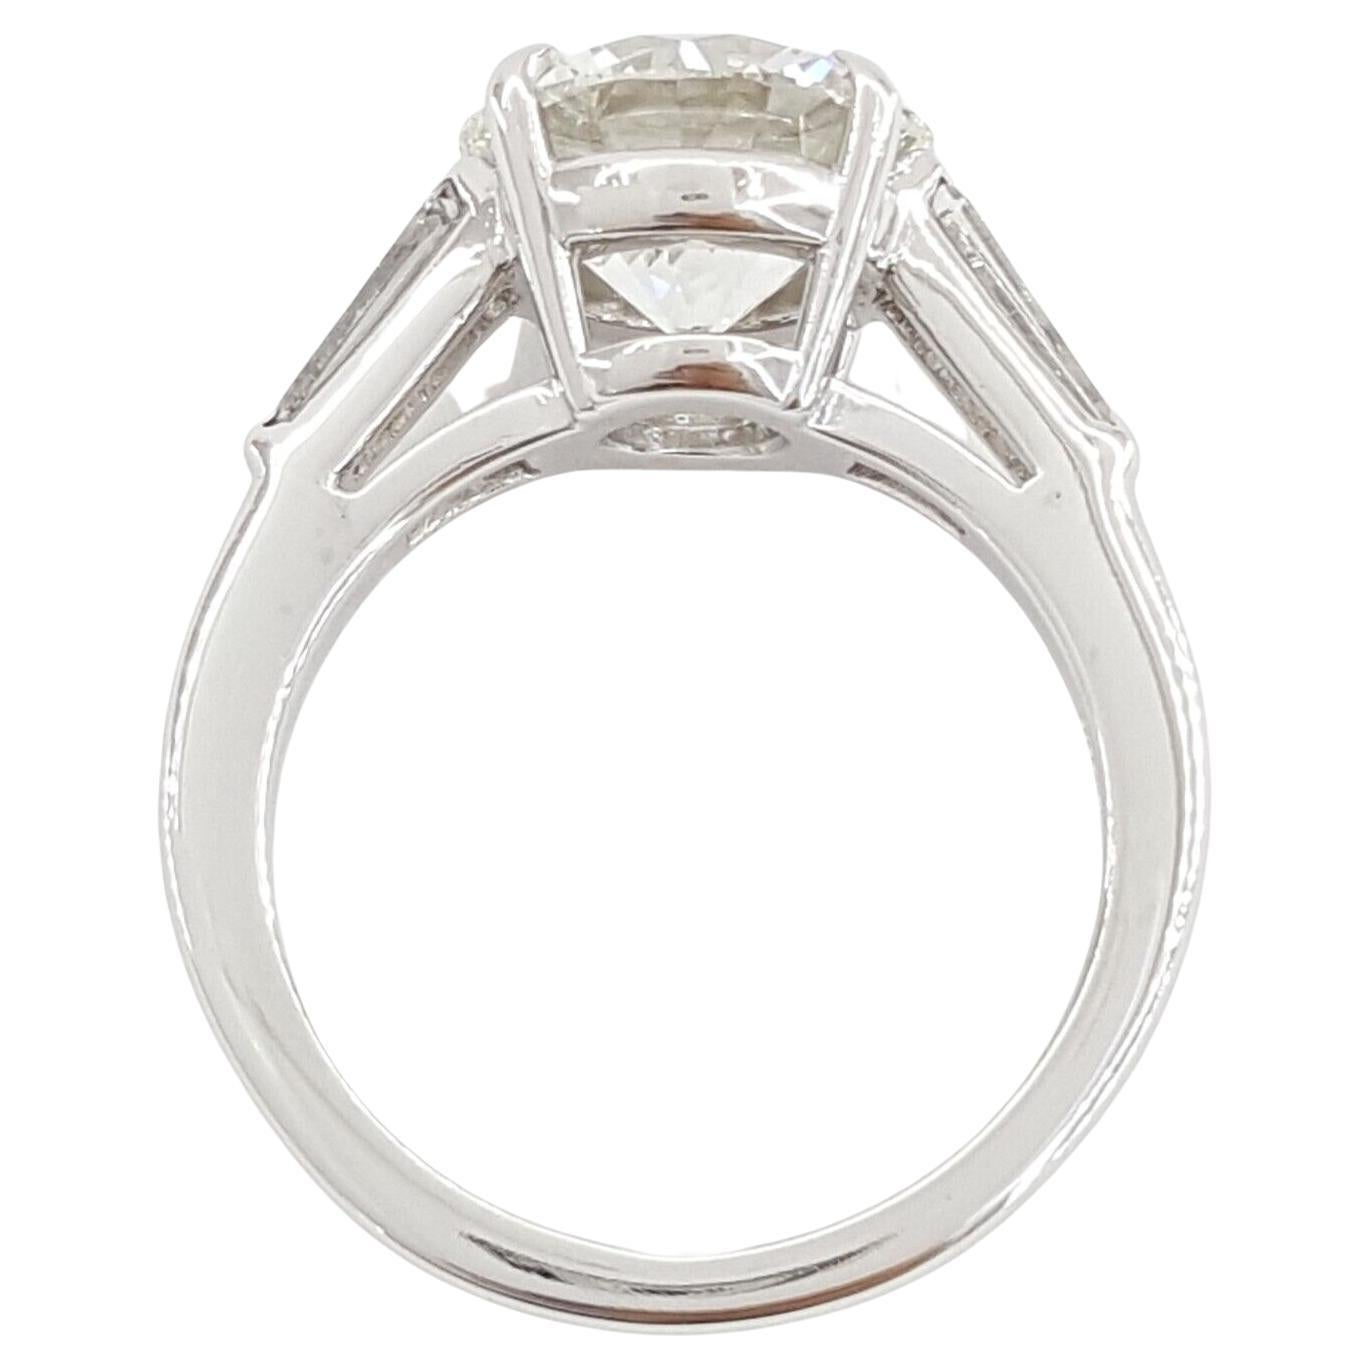 Tiffany & Co. 3(33) Carat Platinum Round Brilliant Cut Diamond Three Stone Engagement Ring. 



La bague pèse 7,9 grammes, taille 5,5, le centre est un diamant rond naturel de taille Brilliante pesant 3,33 ct, de couleur I, de pureté VS1 avec des